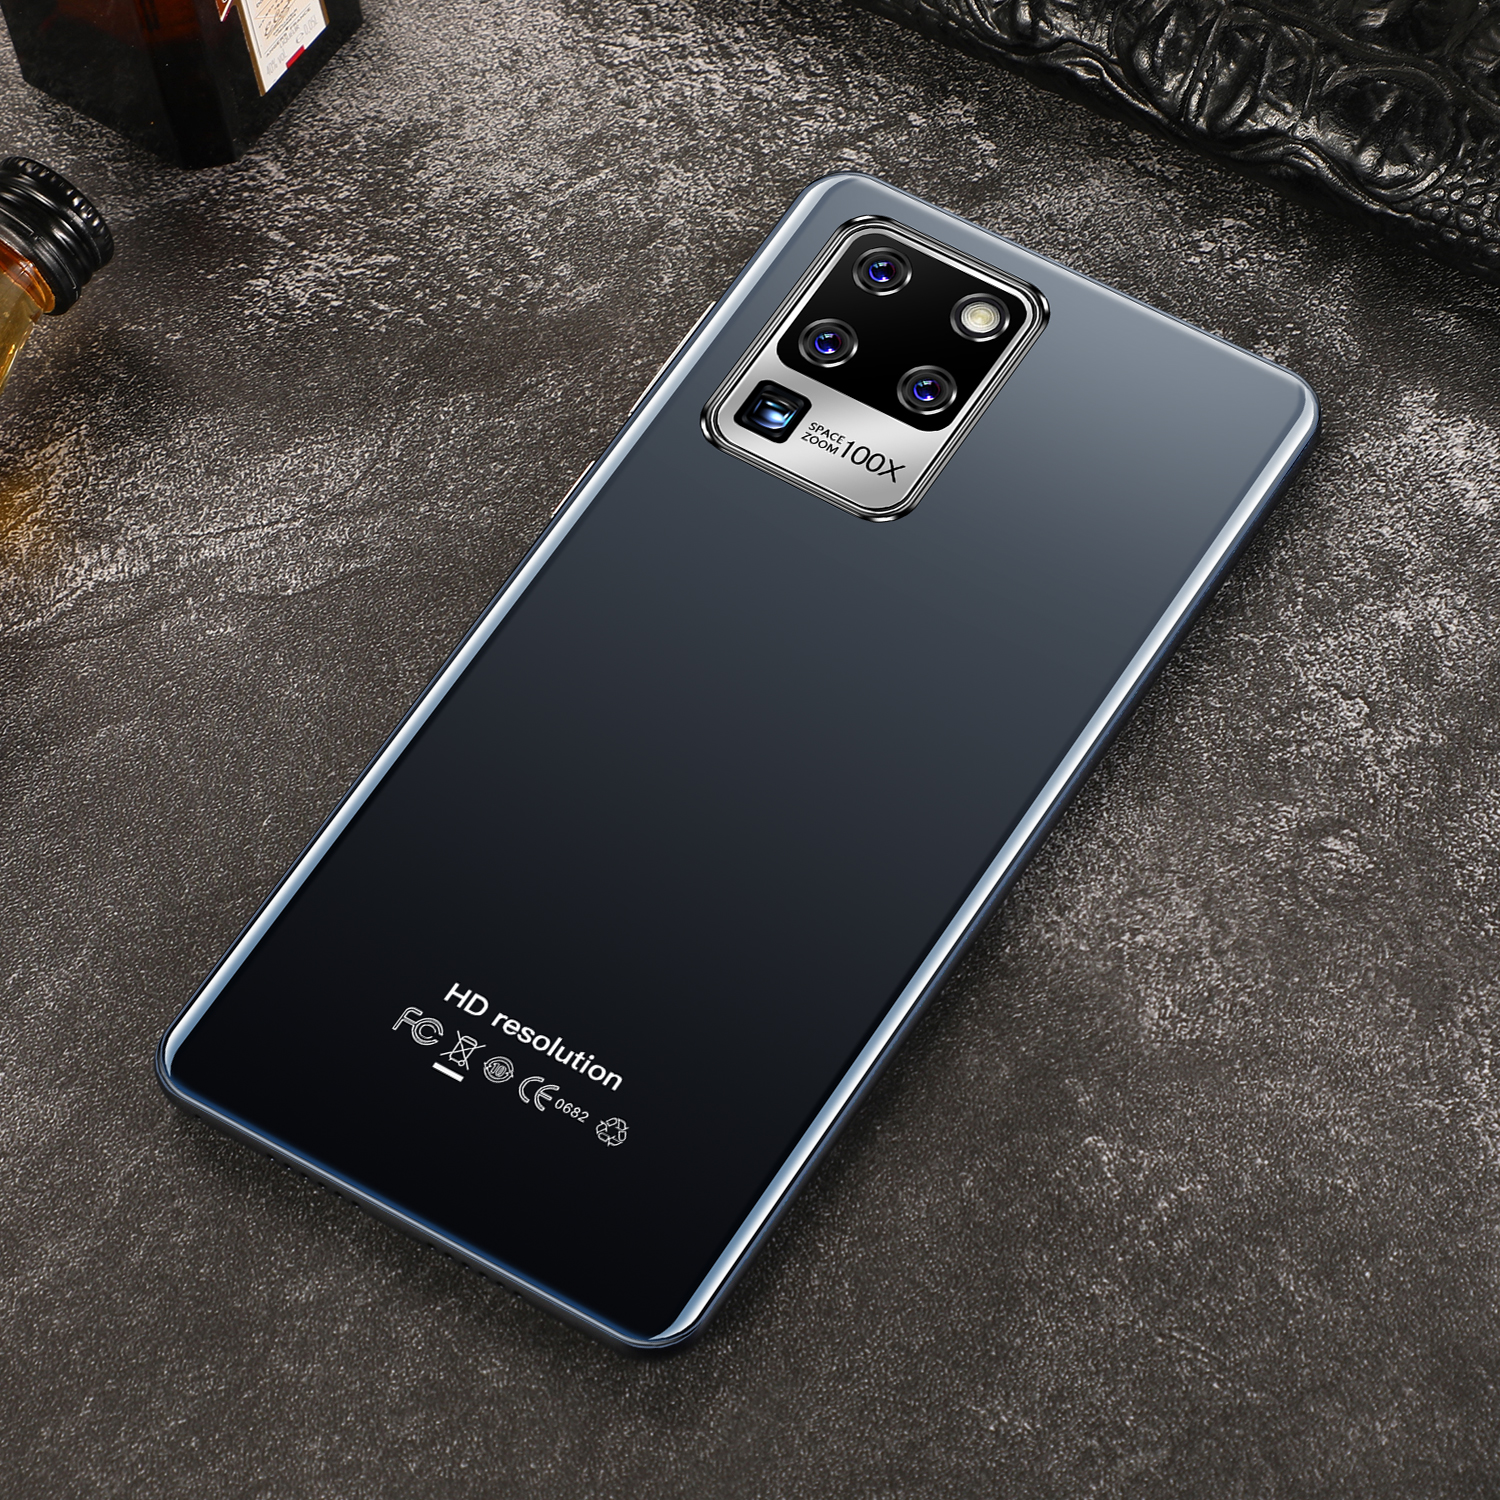 มือถือราคาถูก Sansumg Galaxy S30u + มือถือสมาร์ทโฟนจอใหญ่ 7.5 นิ้ว RAM12G Rom512GB หน่วยความจำใหญ่รองรับ 5G จริง Android 10 สแกนลายนิ้วมือปลดล็อคใบหน้าสเปคจริ